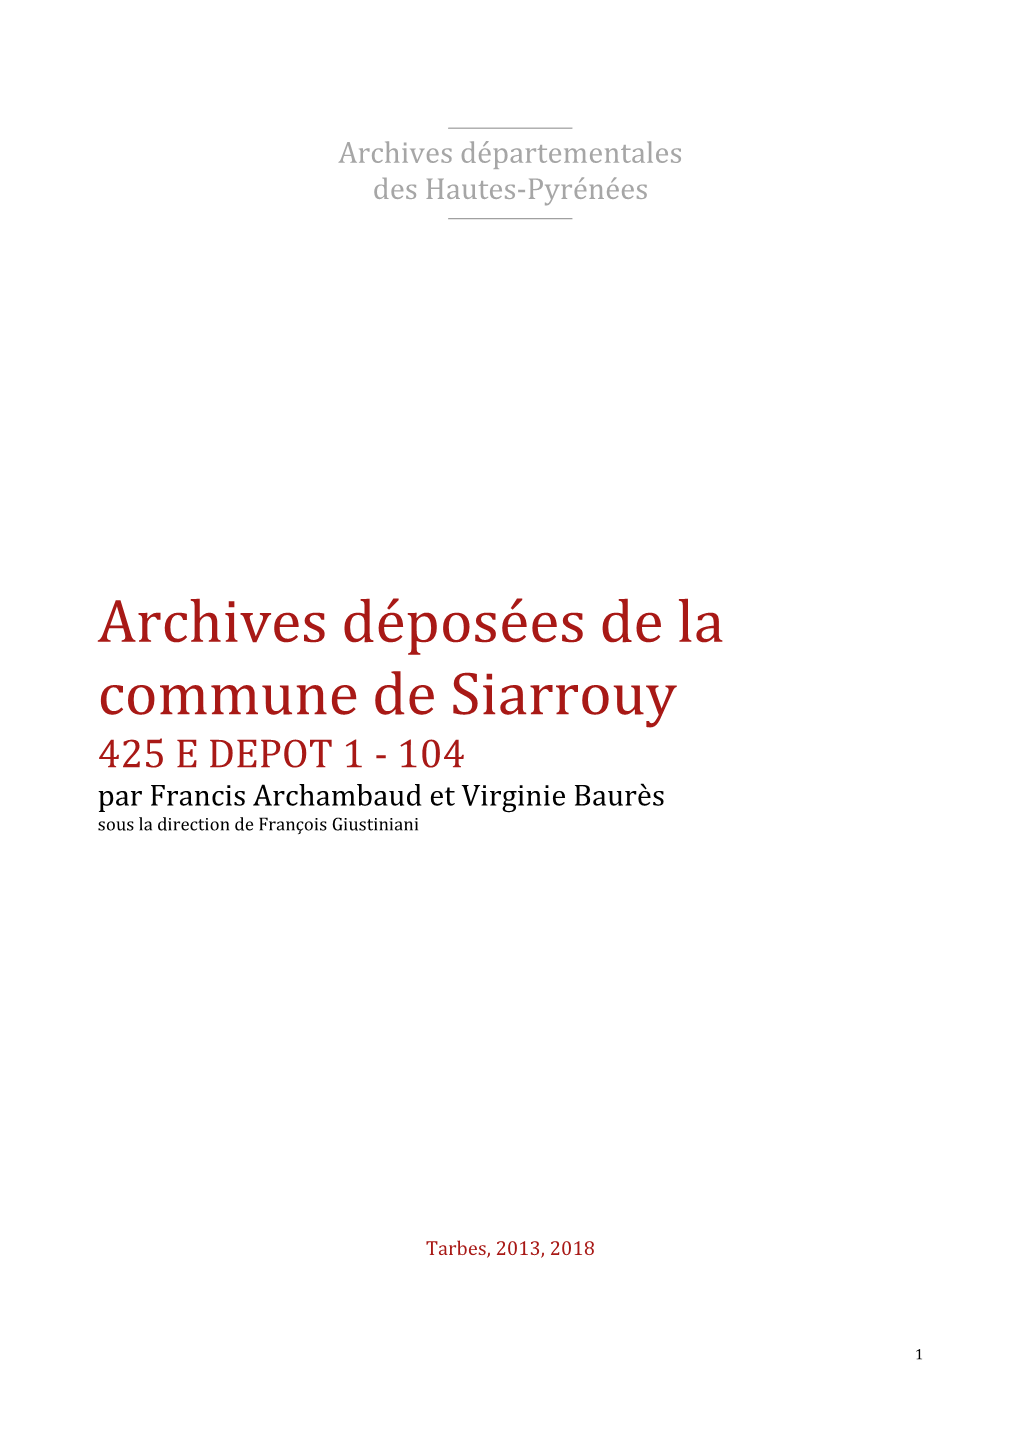 Répertoire Des Archives Déposées De Siarrouy